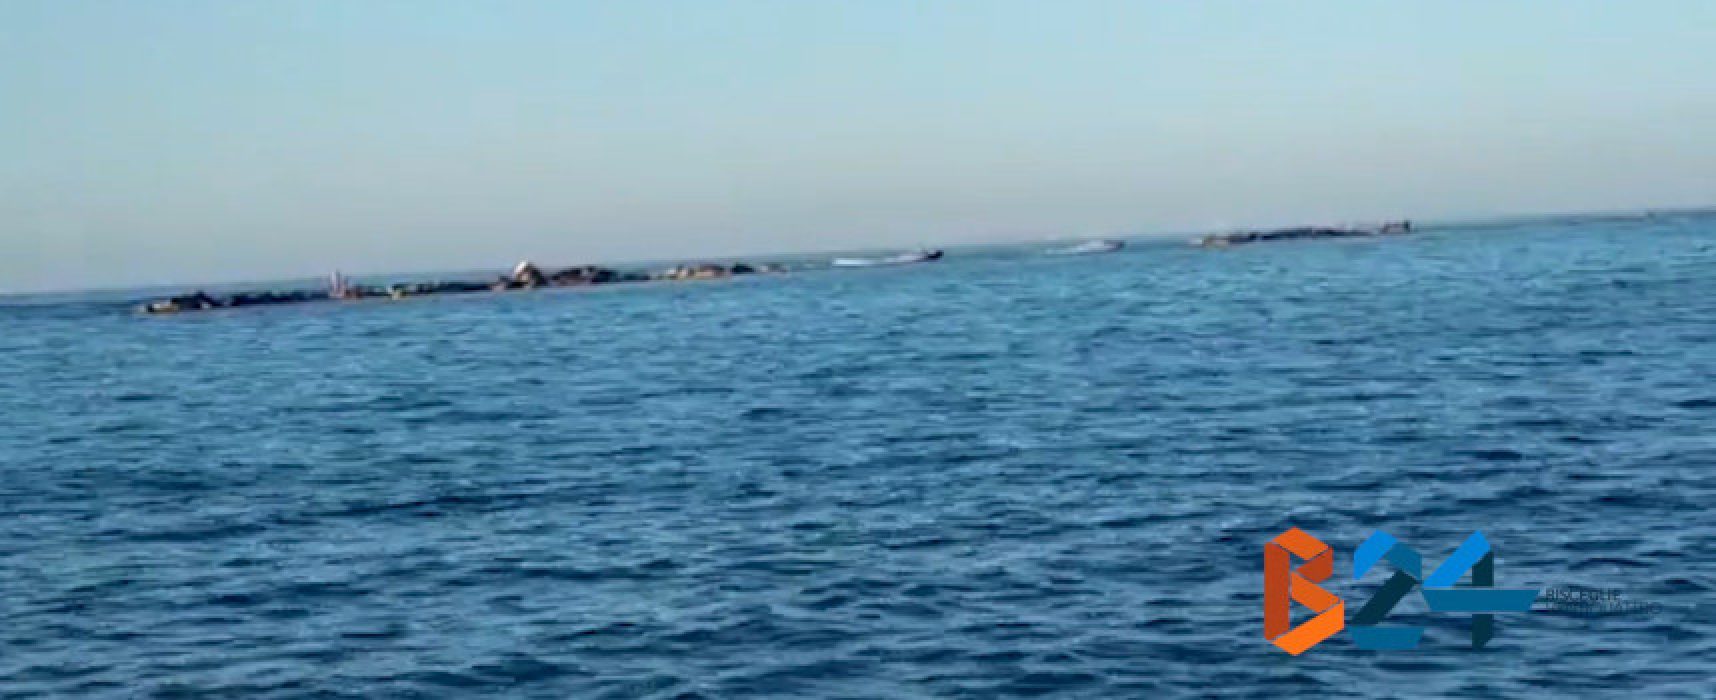 Moto d’acqua sfrecciano sotto costa sul lungomare di ponente / VIDEO